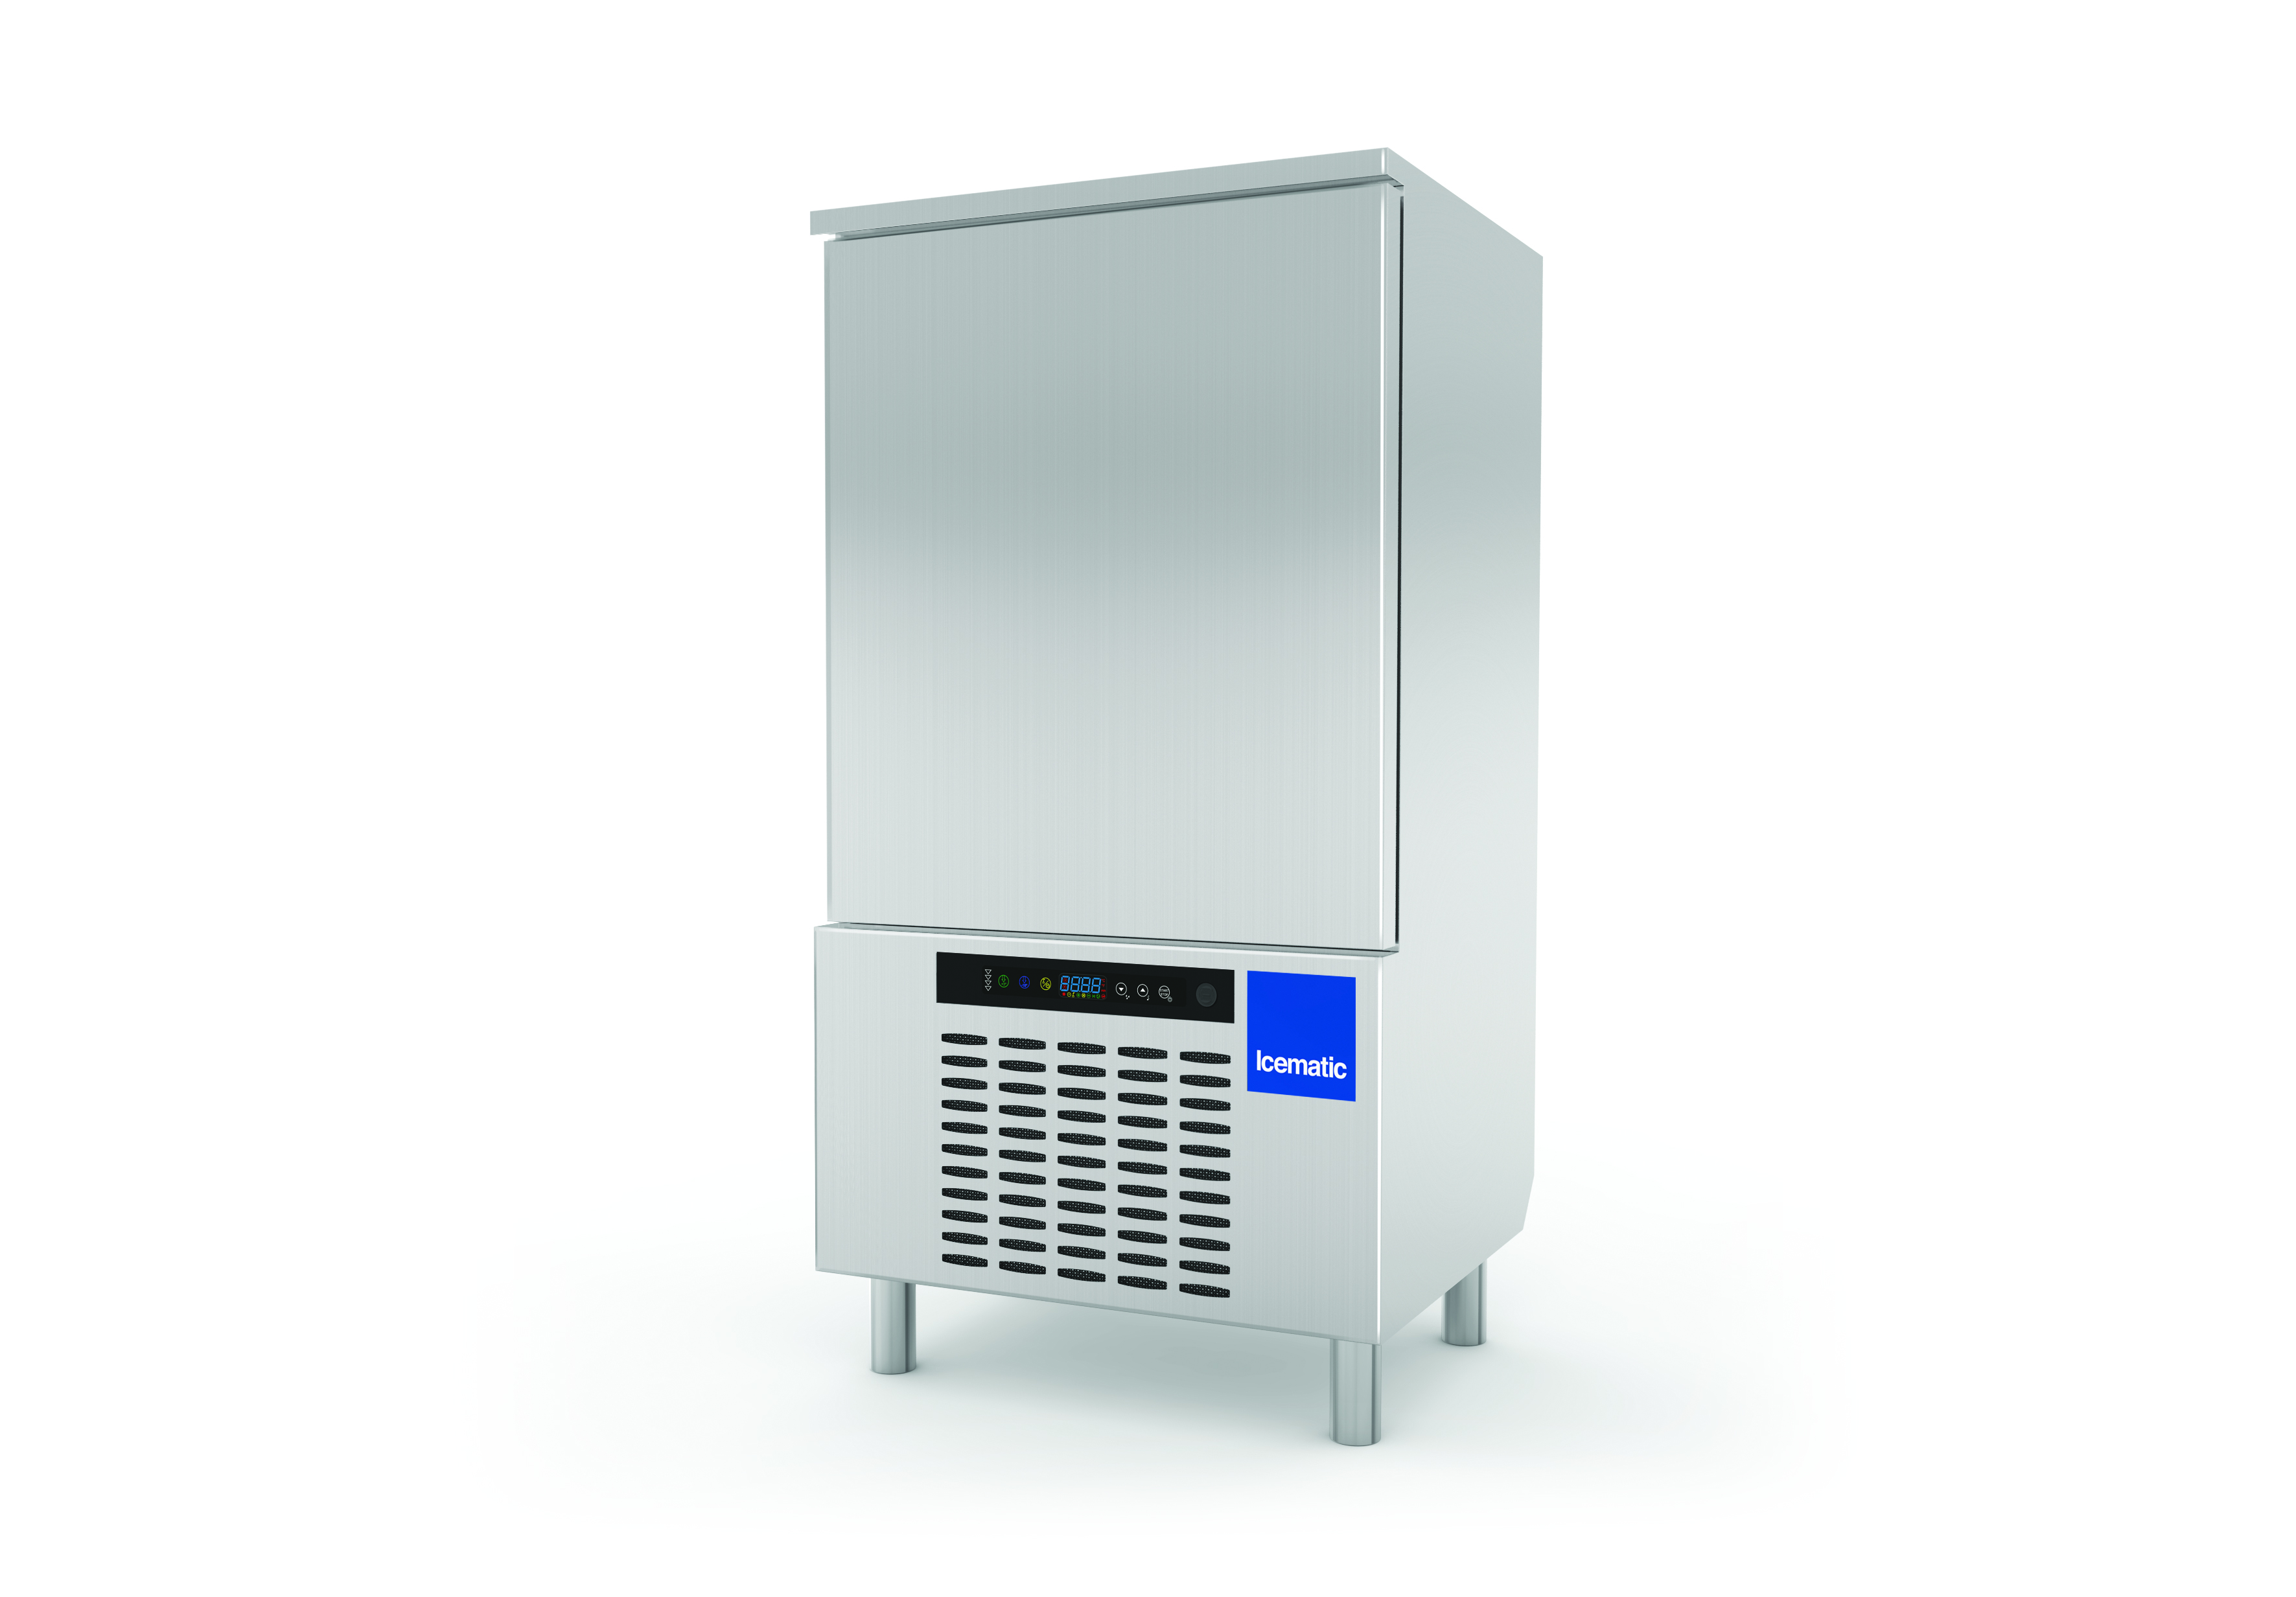 Blast chiller / Shock freezer model ST 10 10 x 1/1 GN